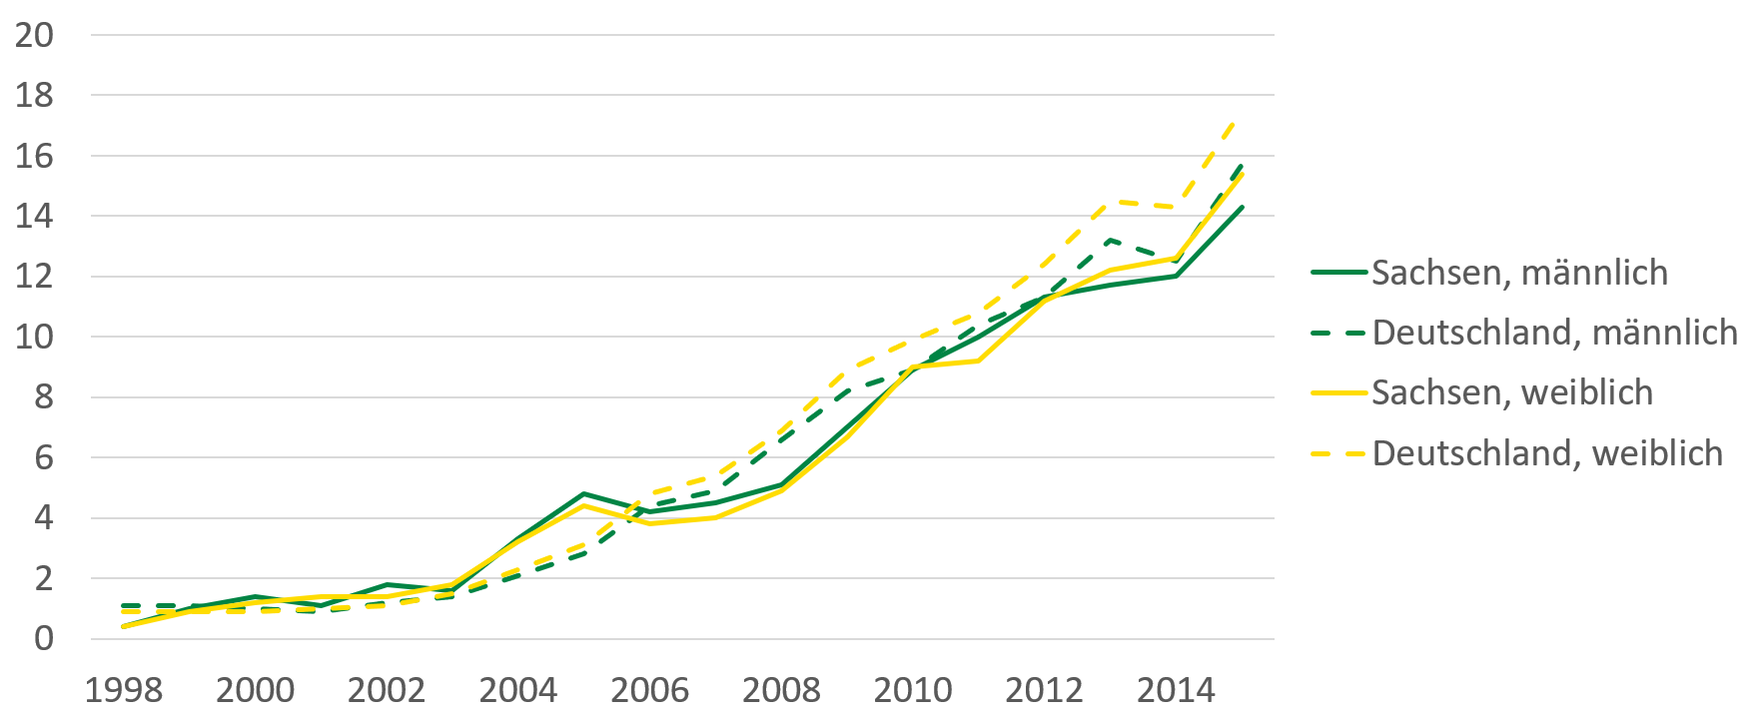 Die Grafik zeigt den beschriebenen Anstieg an Demenzfällen für Männer und Frauen von 1998 bis 2015. Die Werte für Sachsen liegen seit 2006 unter dem bundesweiten Durchschnitt.